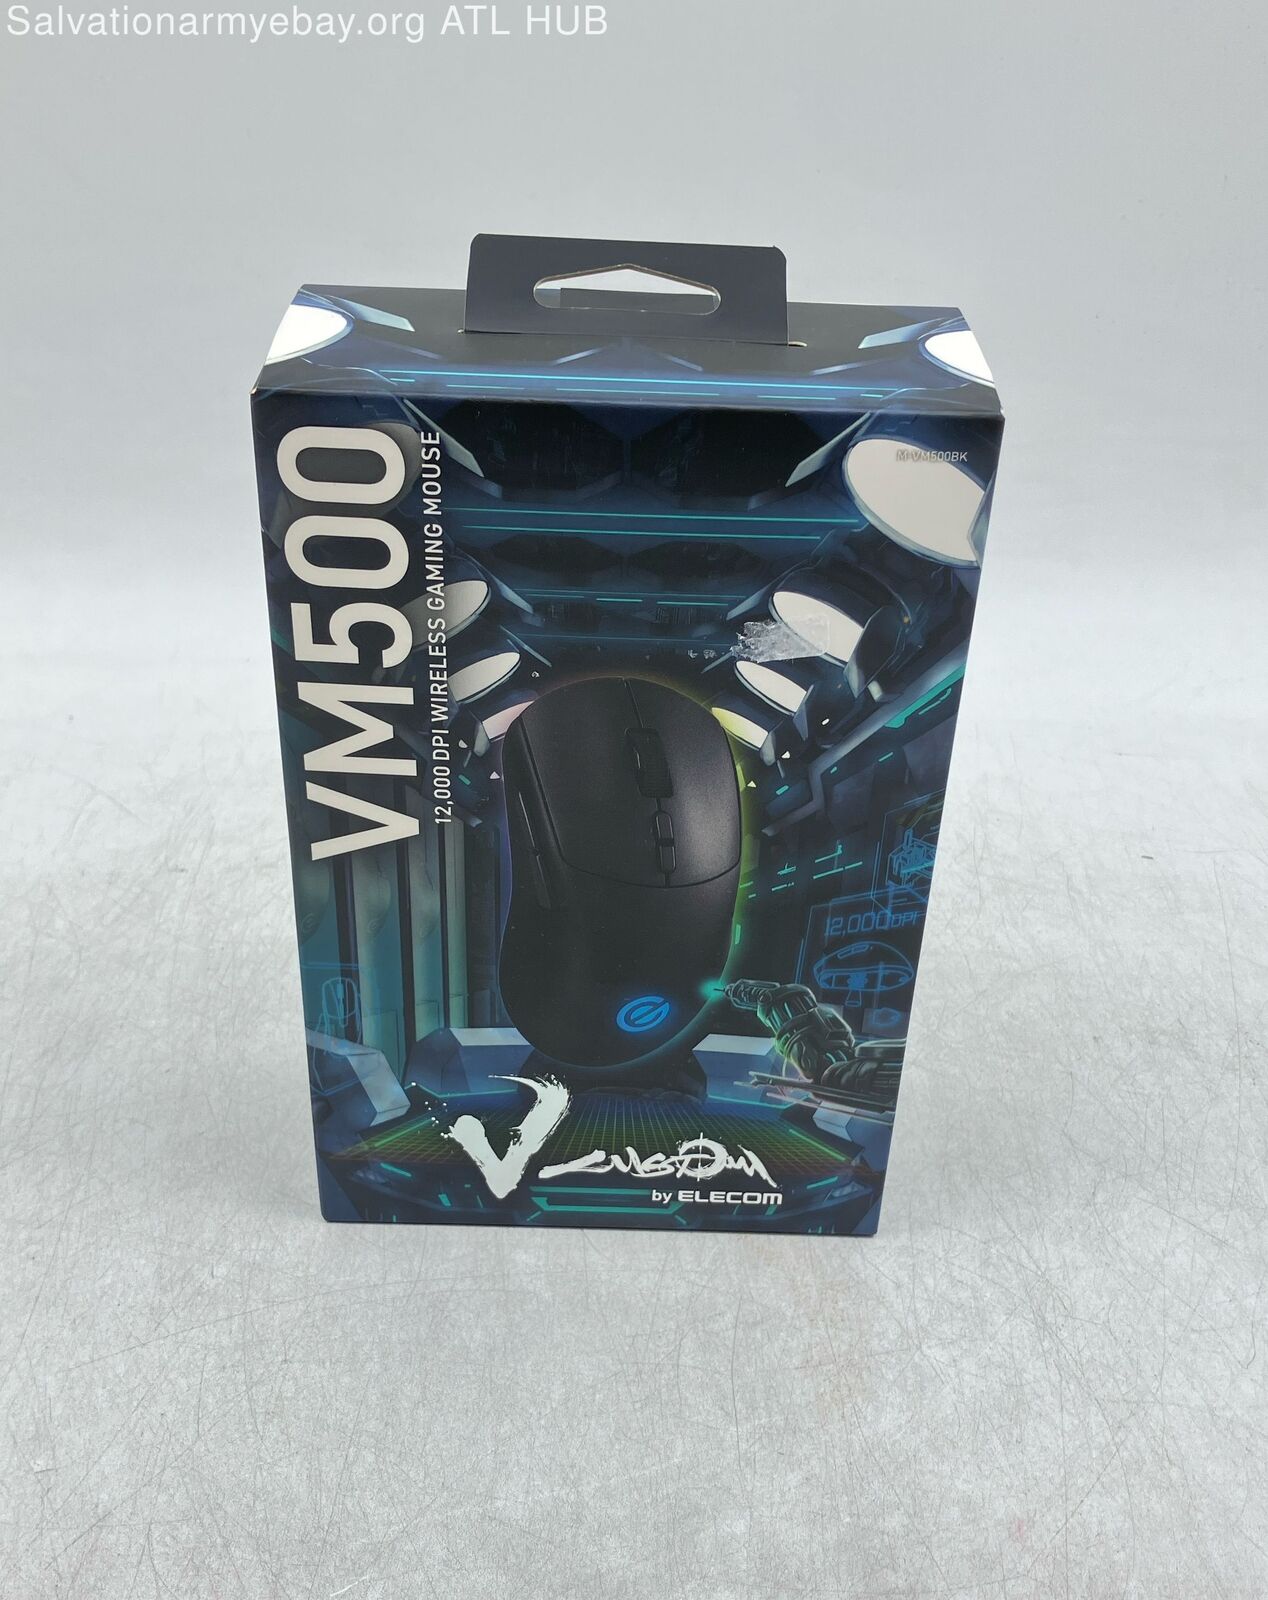 ELECOM V Custom VM500 Wireless Gaming Mouse 12K DPI Optical Sensor - SEALED BOX